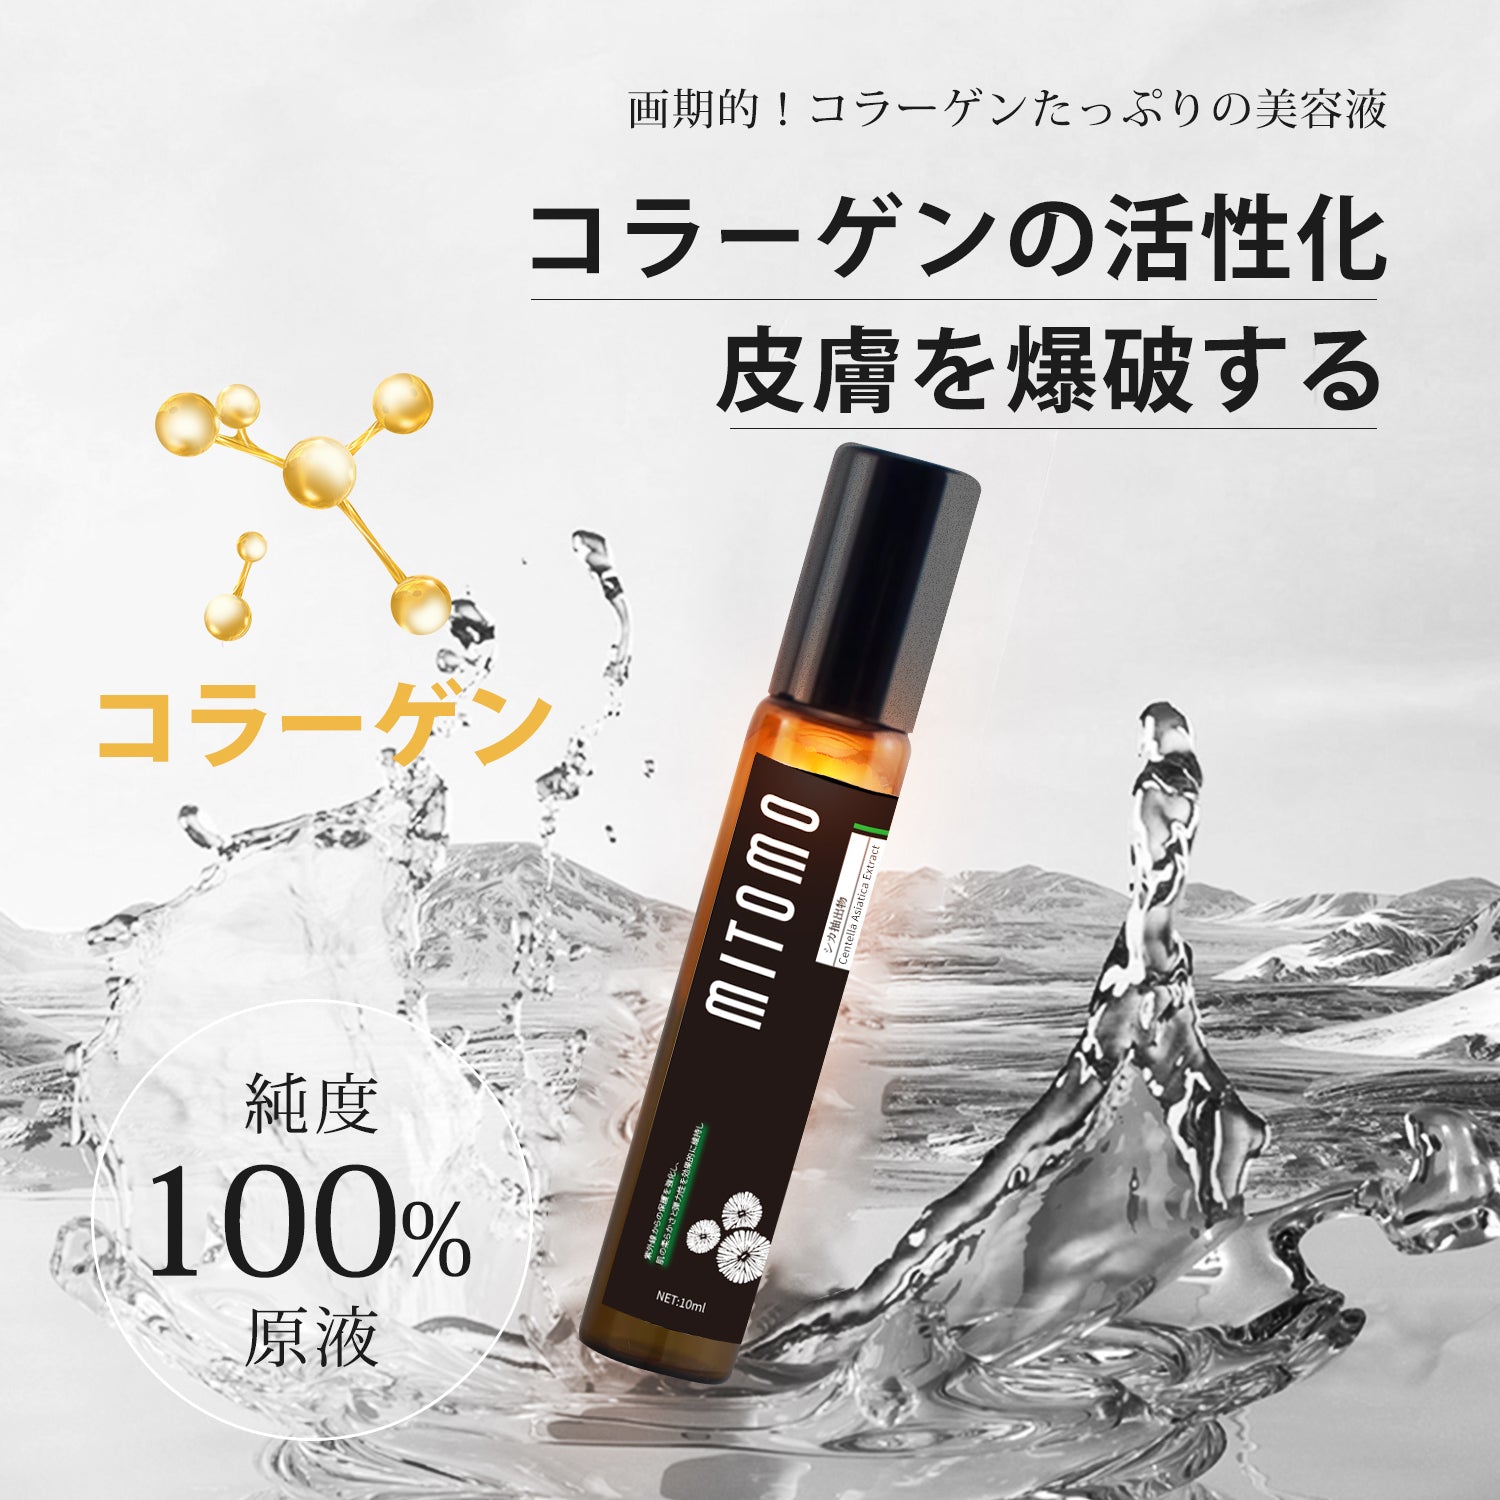 MITOMO 日本製アカシアコラーゲンエキススキンケア 潤い 保湿 フアンペアボトル10mlエキス【EXSA00006-01-010】